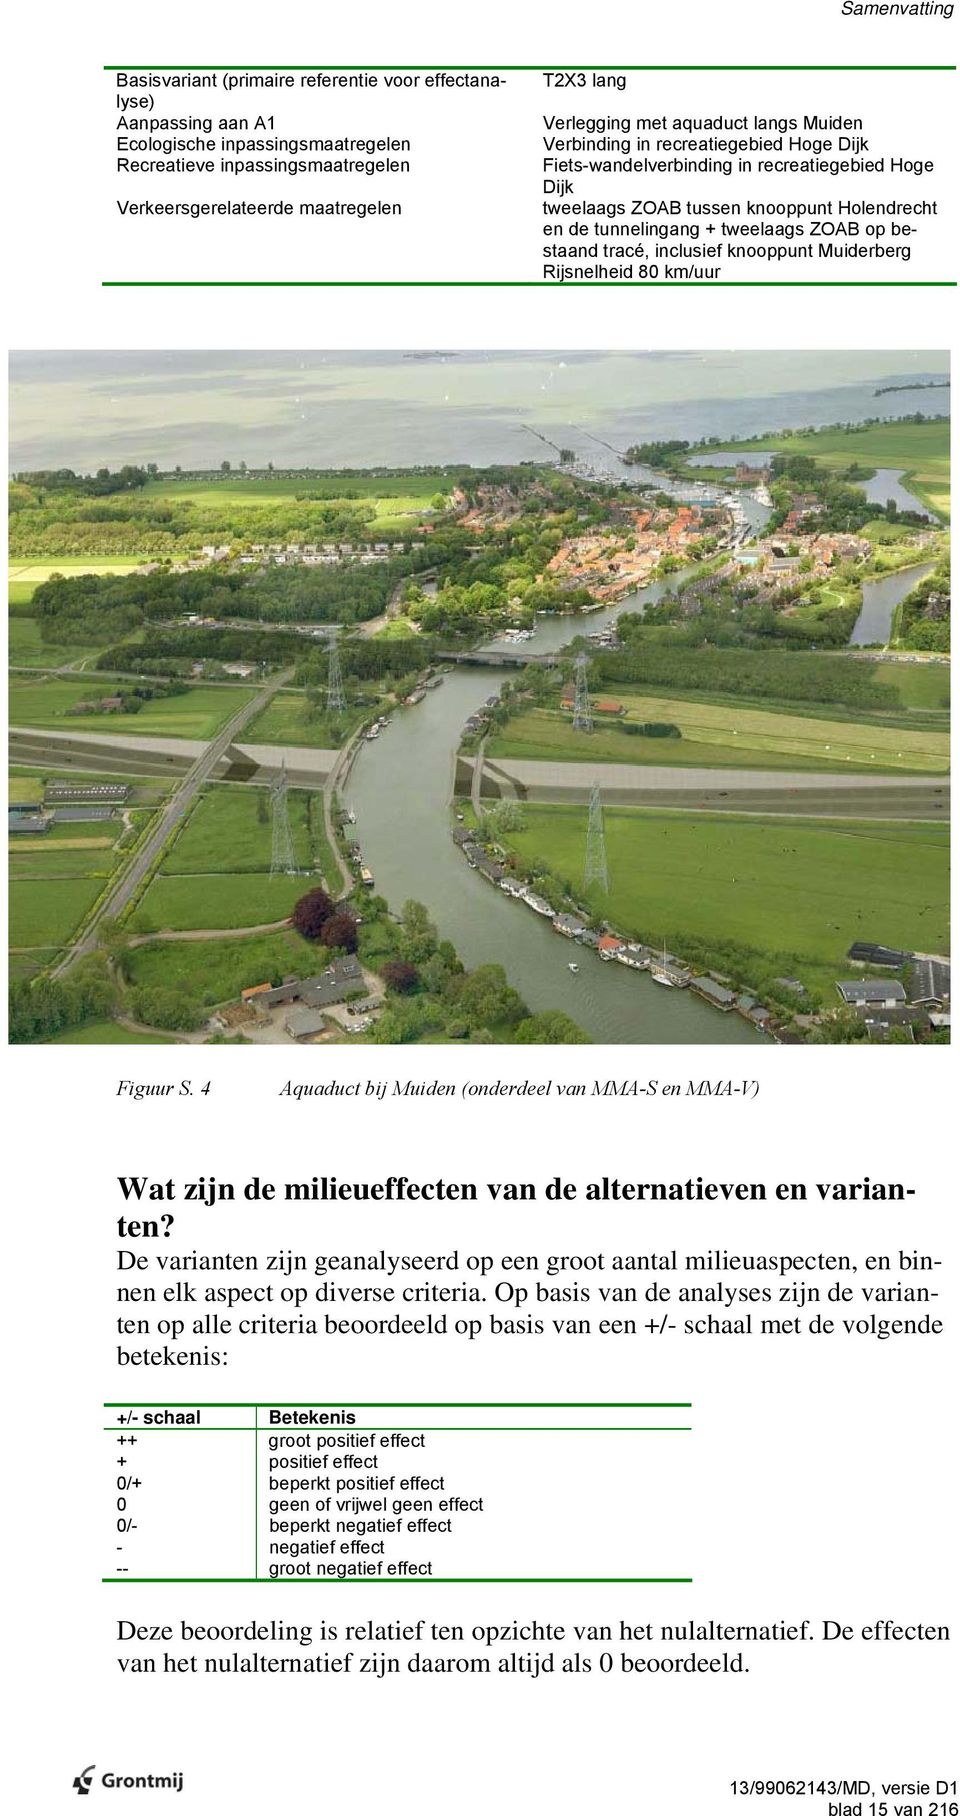 tweelaags ZOAB op bestaand tracé, inclusief knooppunt Muiderberg Rijsnelheid 80 km/uur Figuur S.